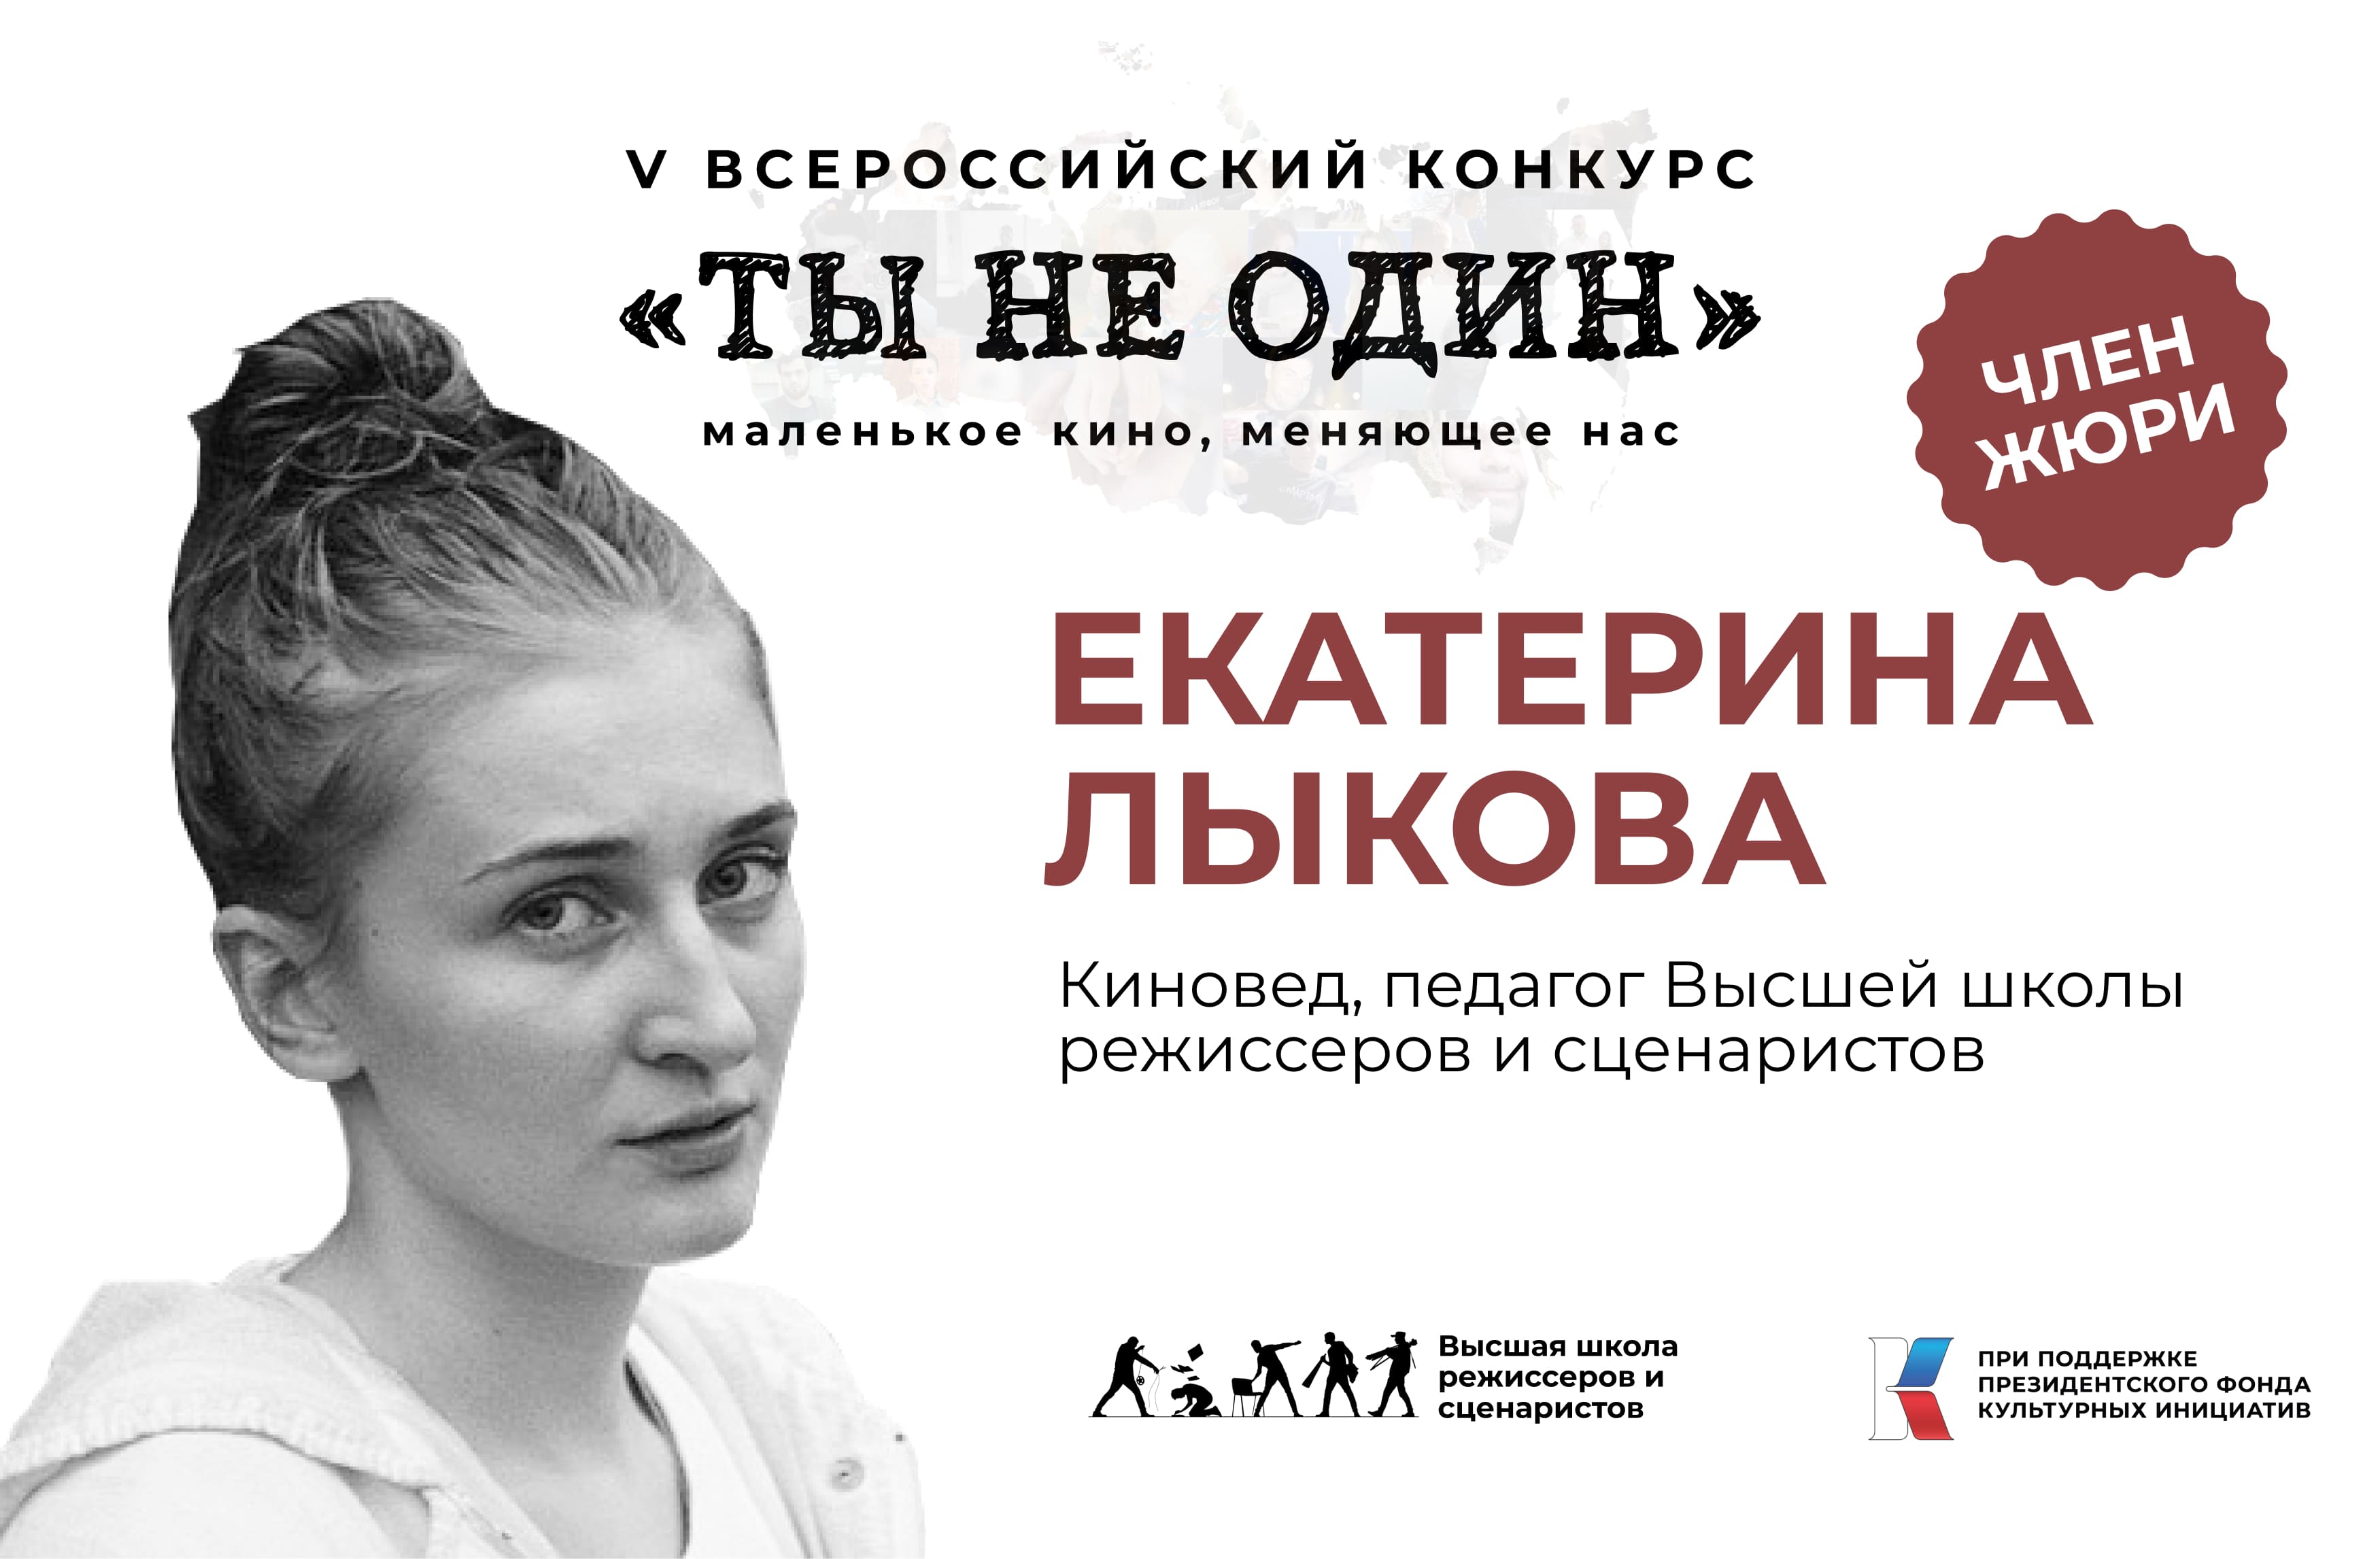 Екатерина Лыкова - киновед, член жюри конкурса "Ты не один"